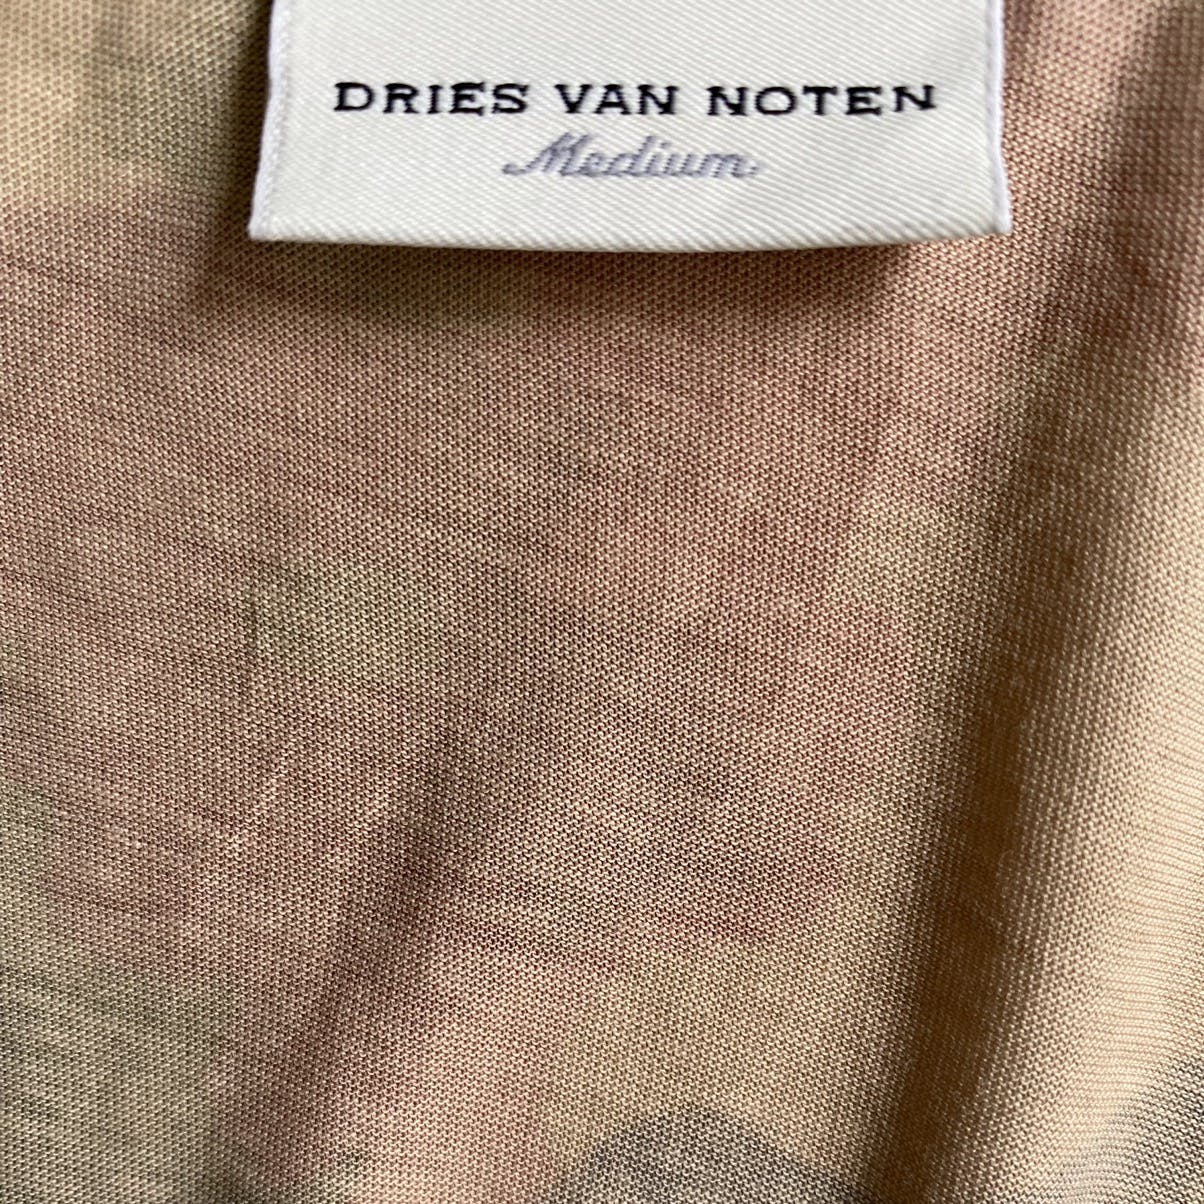 Dries Van Noten Swiss Camo V Neck t shirt - 3